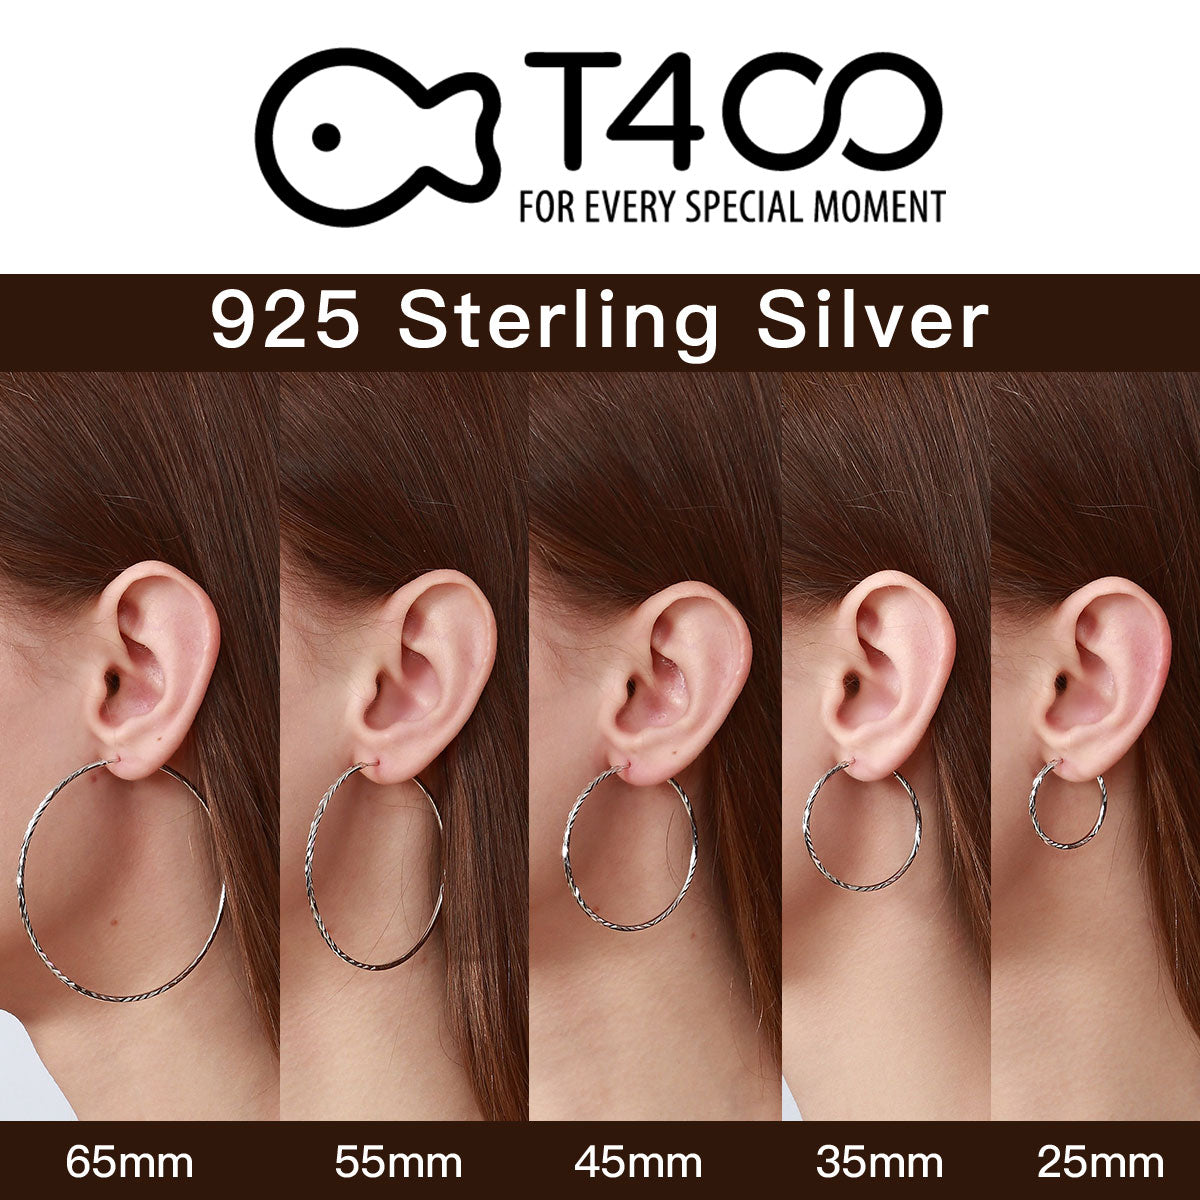 T400 3mm Thick 925 Sterling Silver Hoop Earrings Large Flower Cut Hoop